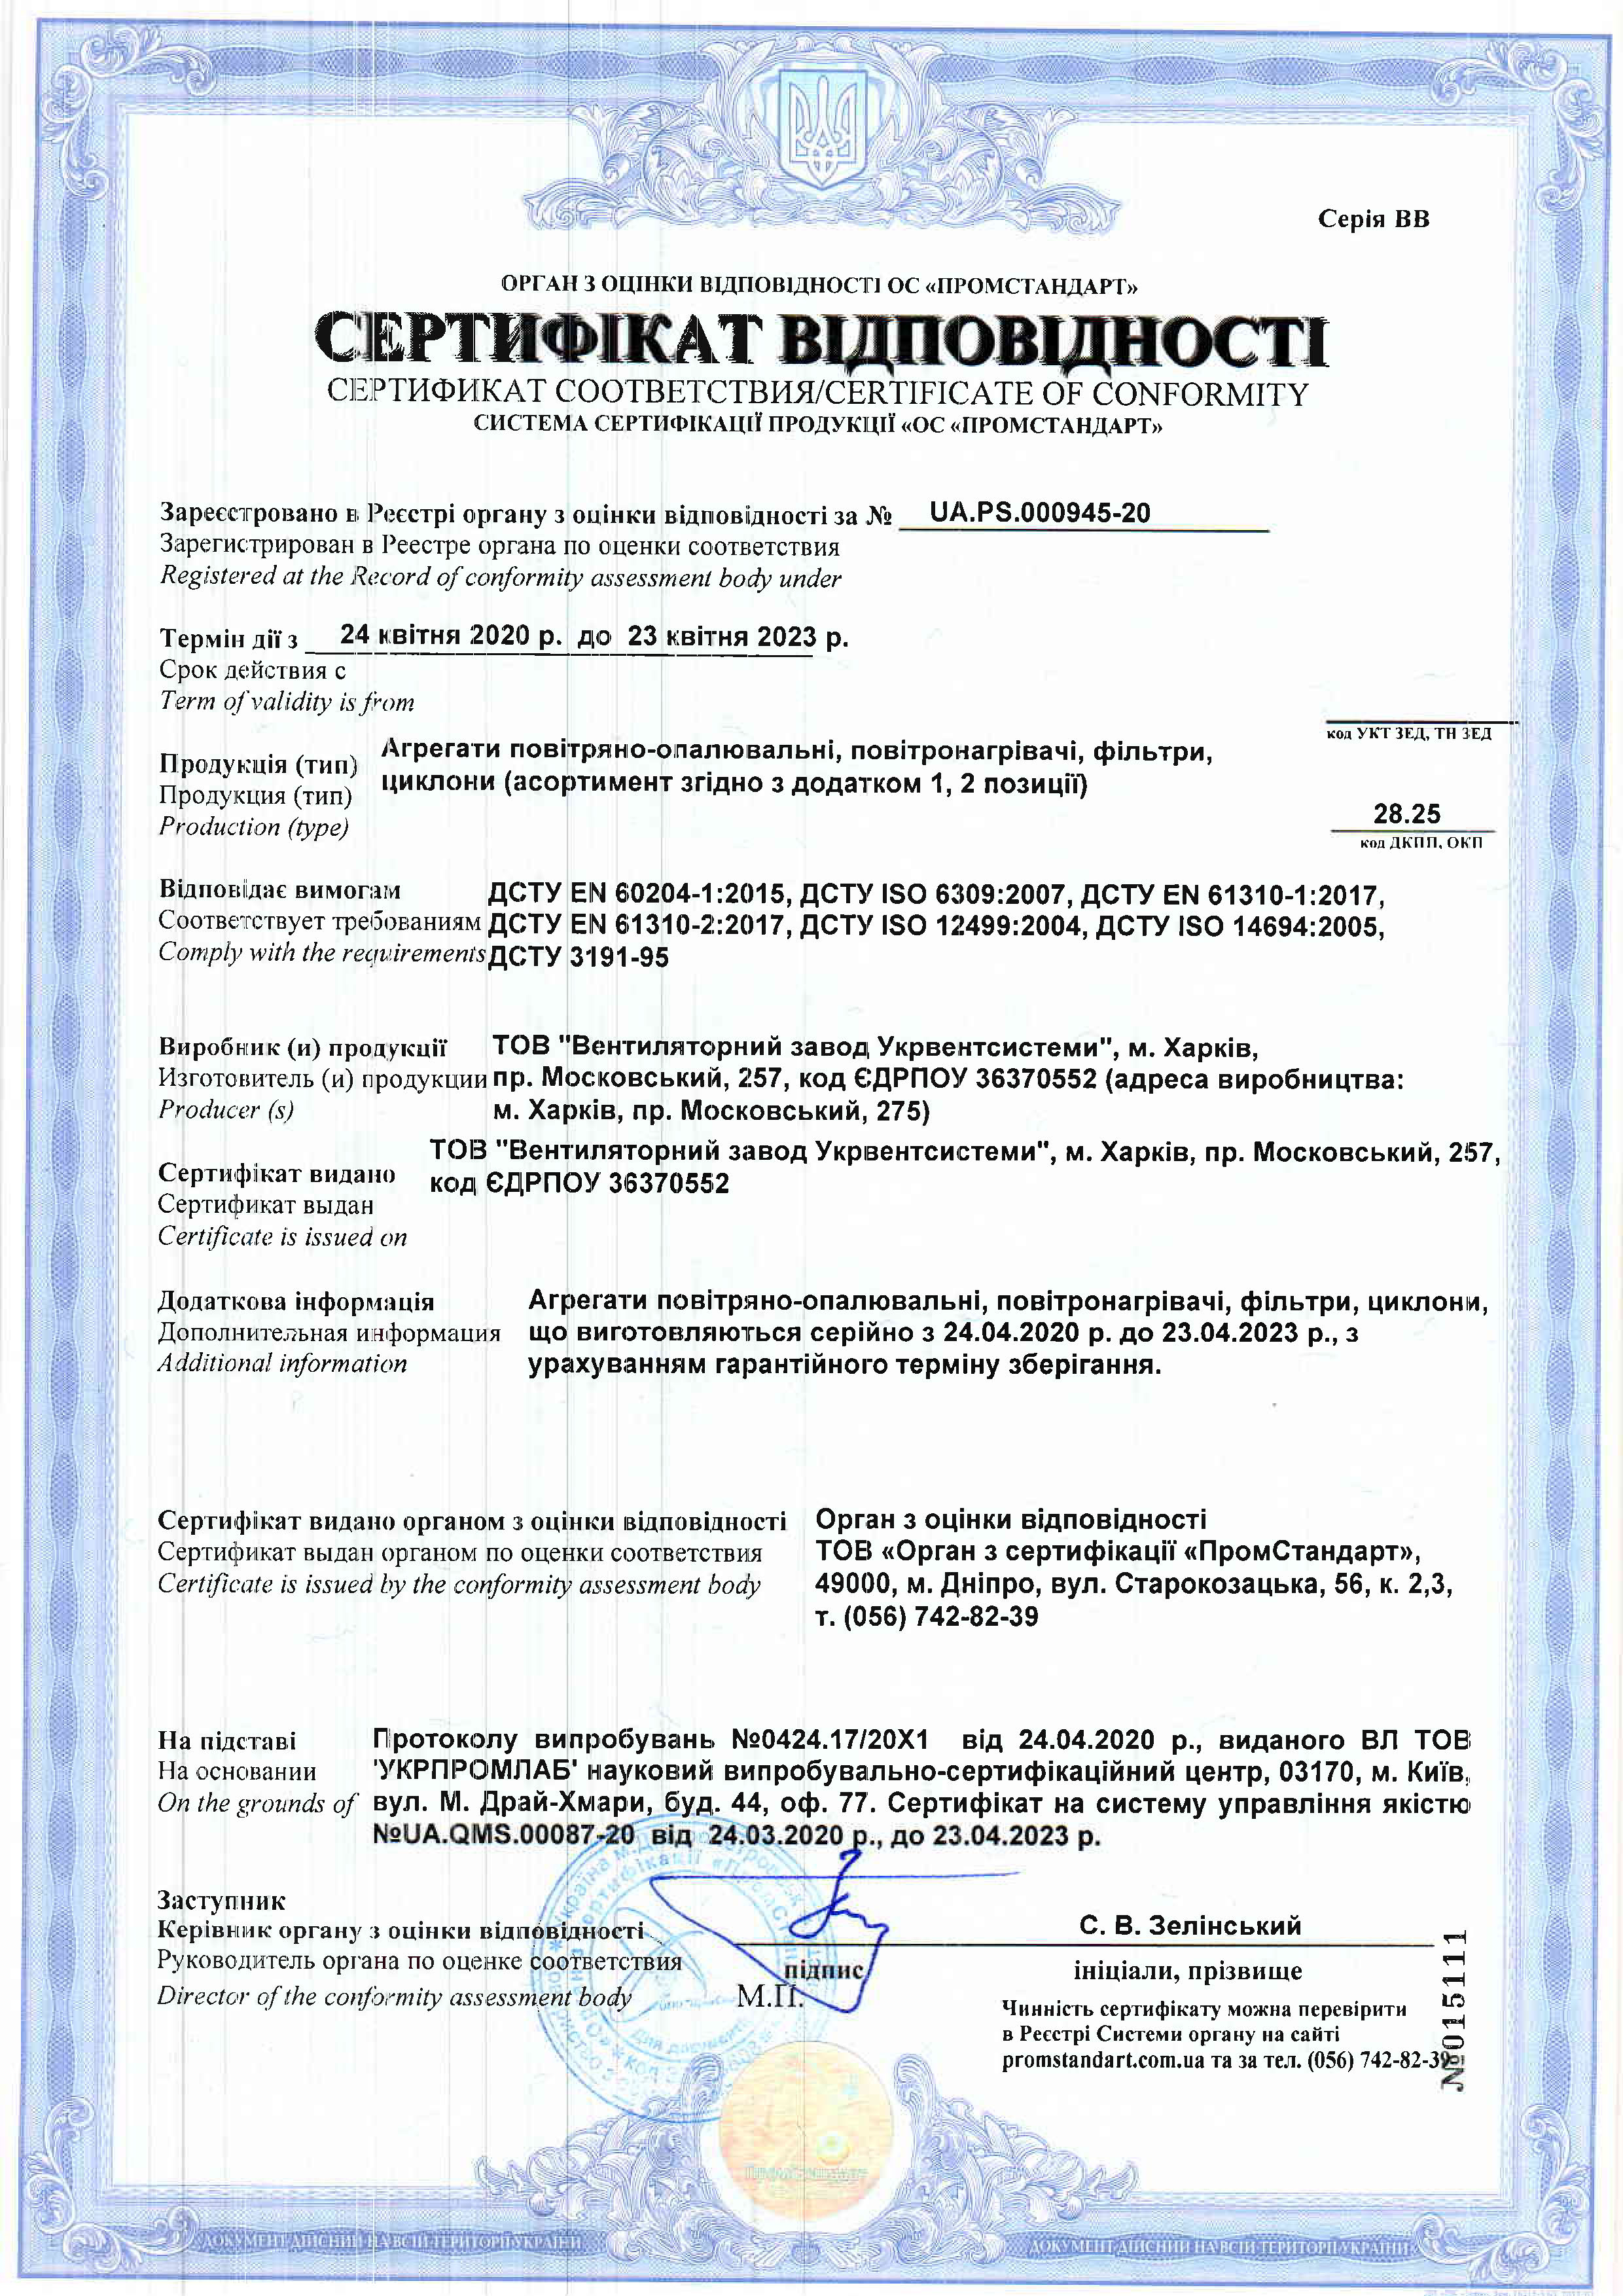 Сертифікат відповідності: Агрегати повітряно-опалювальні